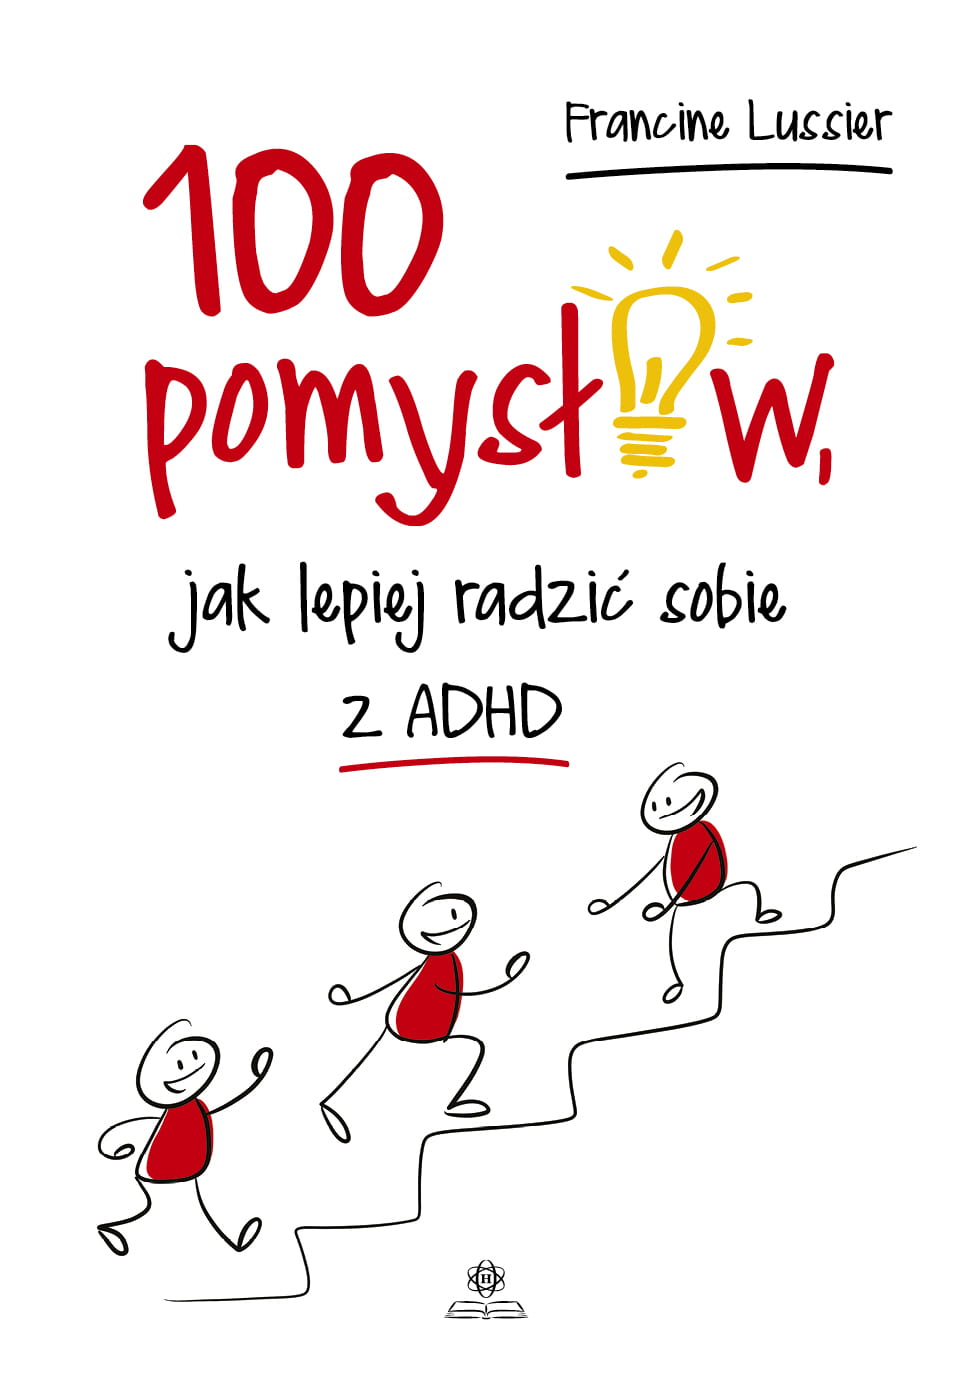 100 pomyslow jak lepiej radzic sobie z ADHD 